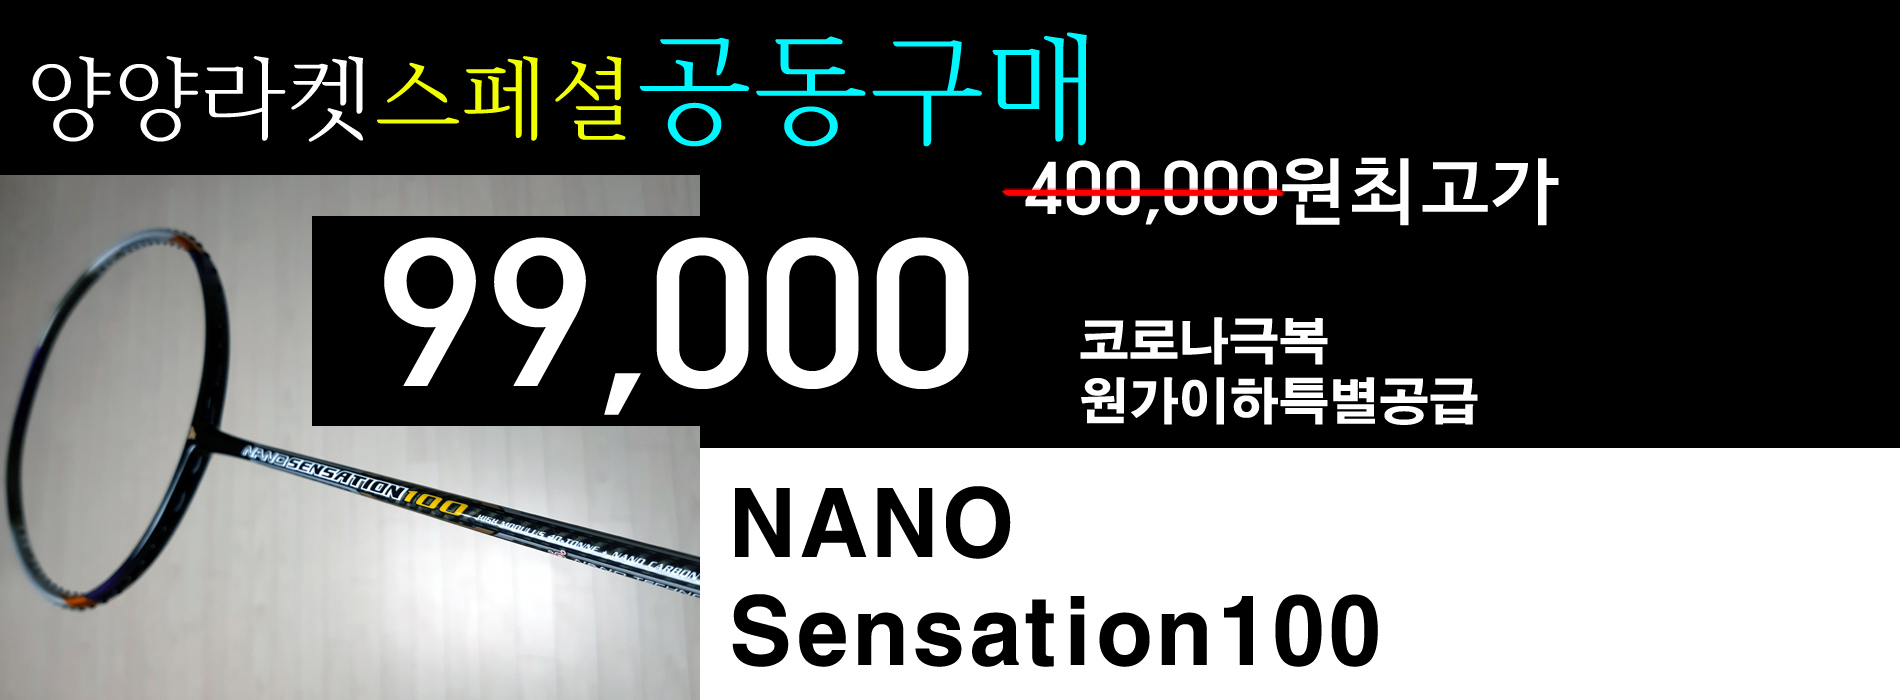 양양배드민턴라켓-NANO Sensation 100